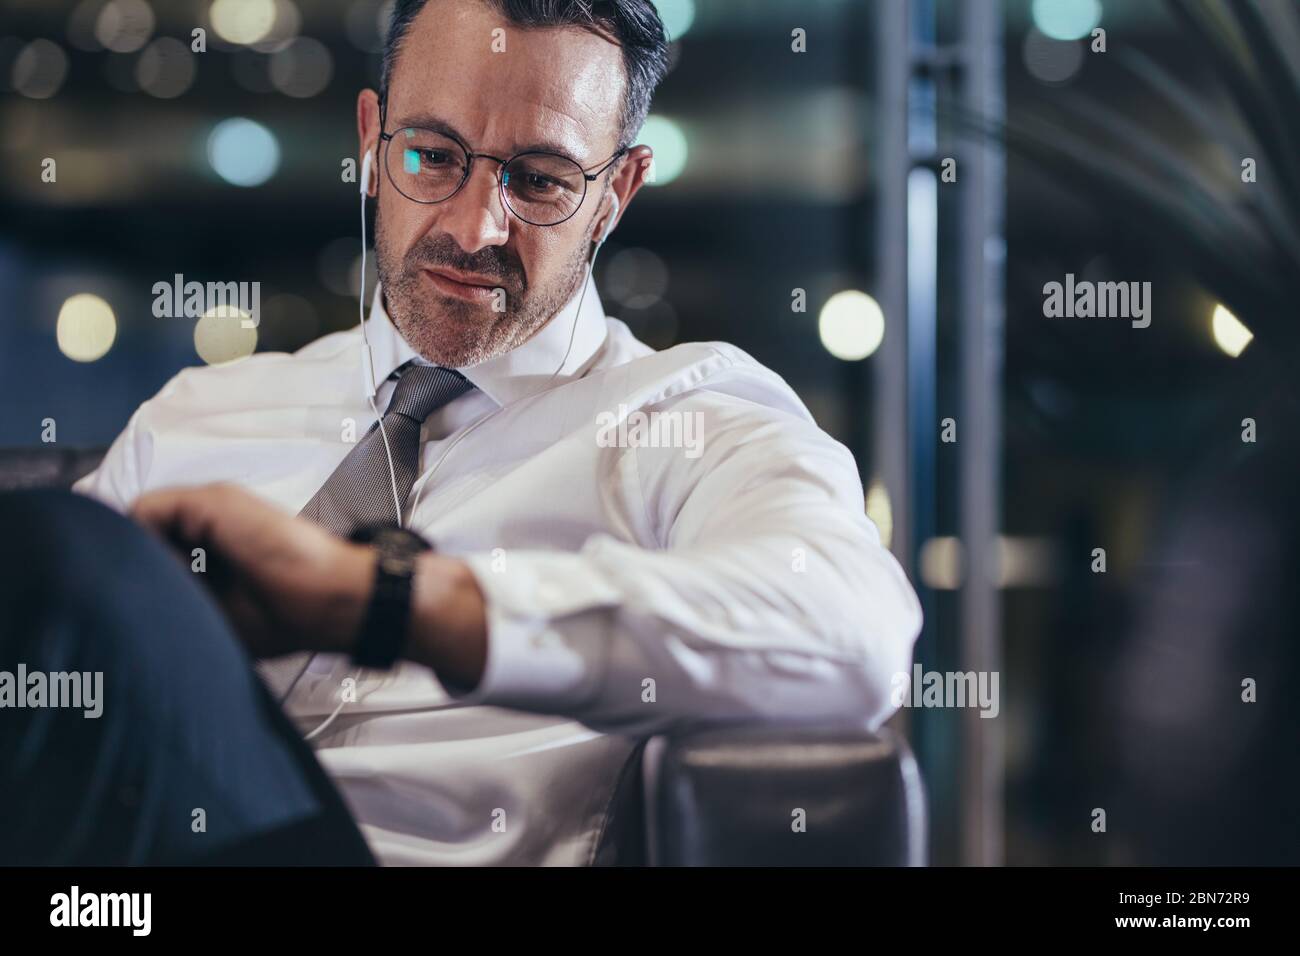 Uomo d'affari che aspetta all'aeroporto l'orario di controllo. Uomo in formalwear seduto alla partenza dell'aeroporto guardando il suo orologio da polso. Foto Stock